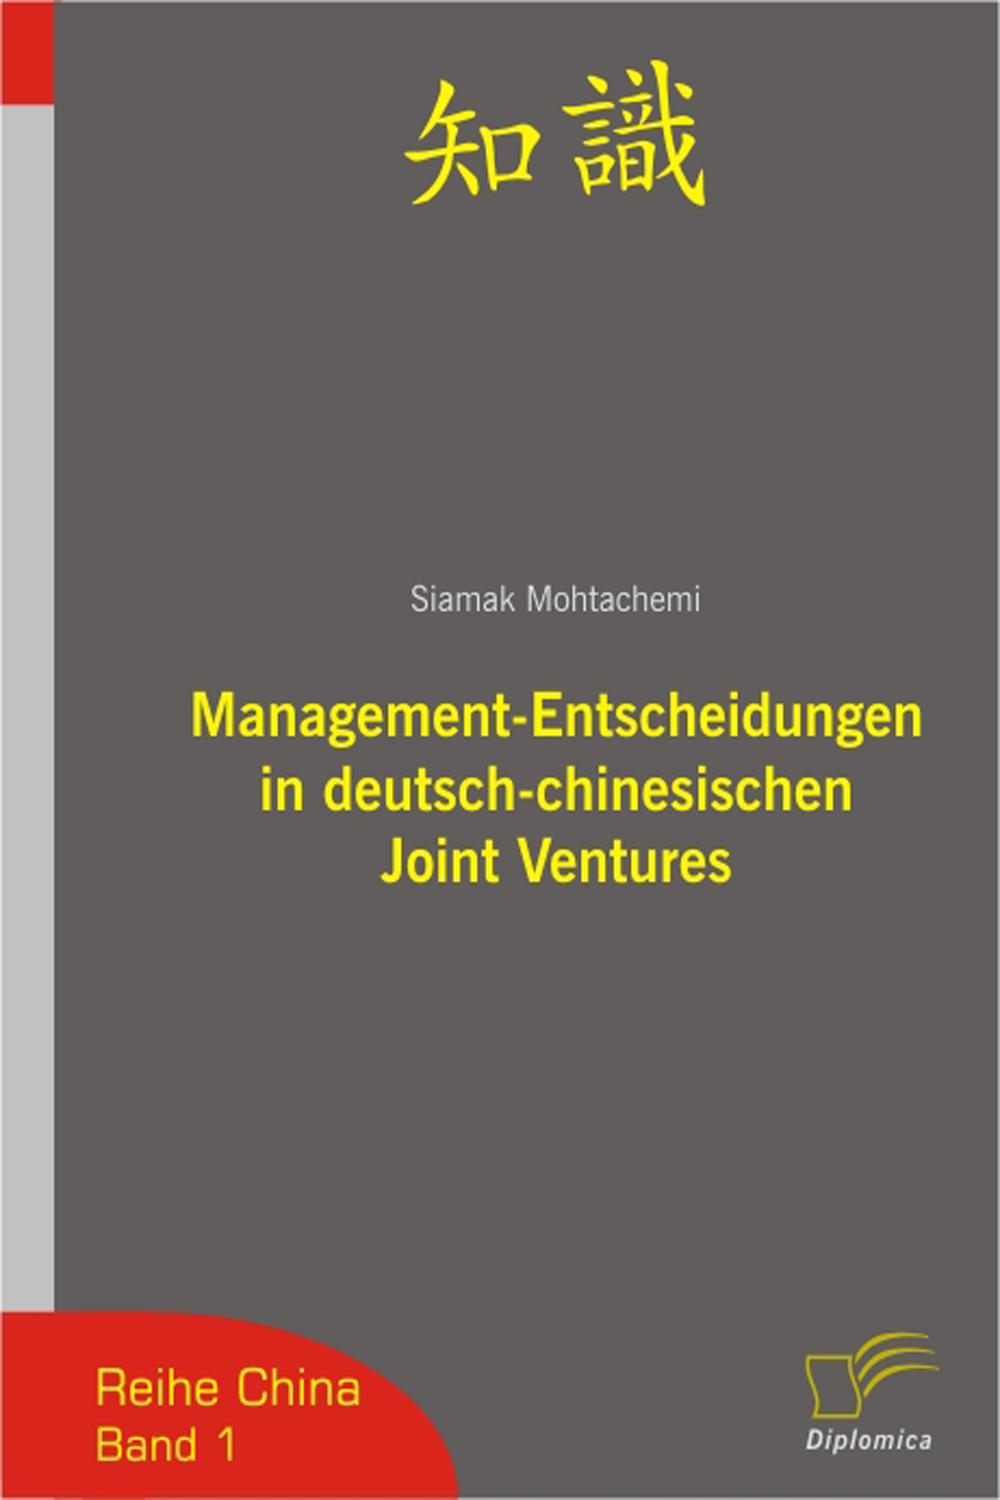 Management-Entscheidungen in deutsch-chinesischen Joint Ventures - Siamak Mohtachemi